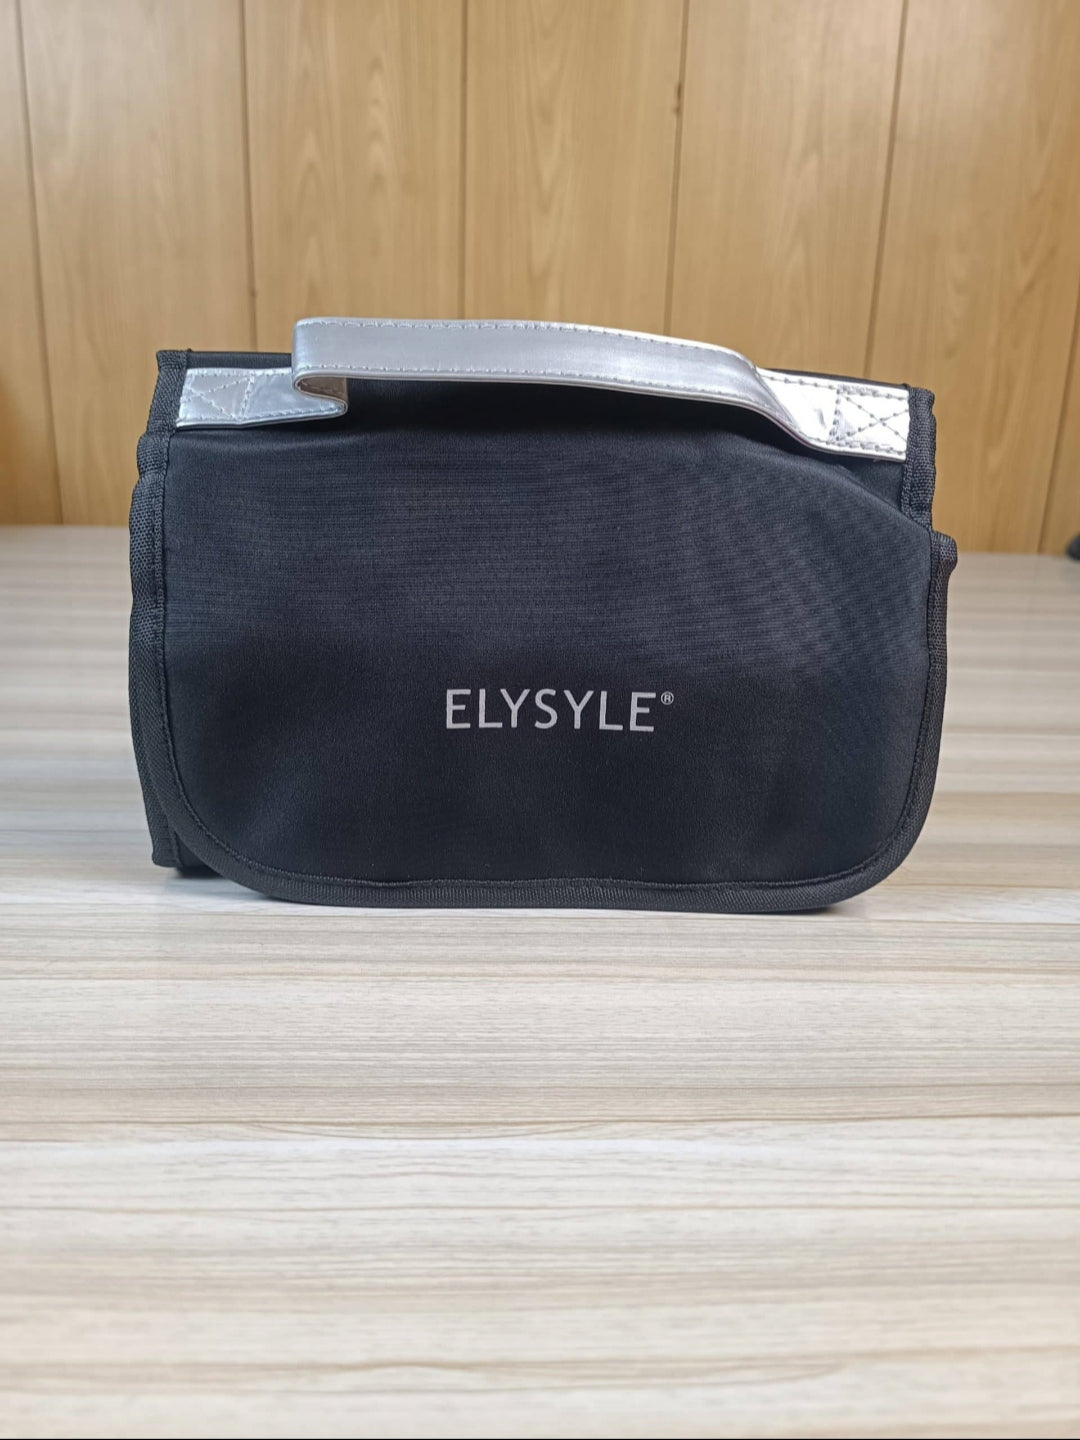 ELYSYLE 2 Pcs Cosmetics Makeup Bag/ Organizer Travel Makeup Pouch